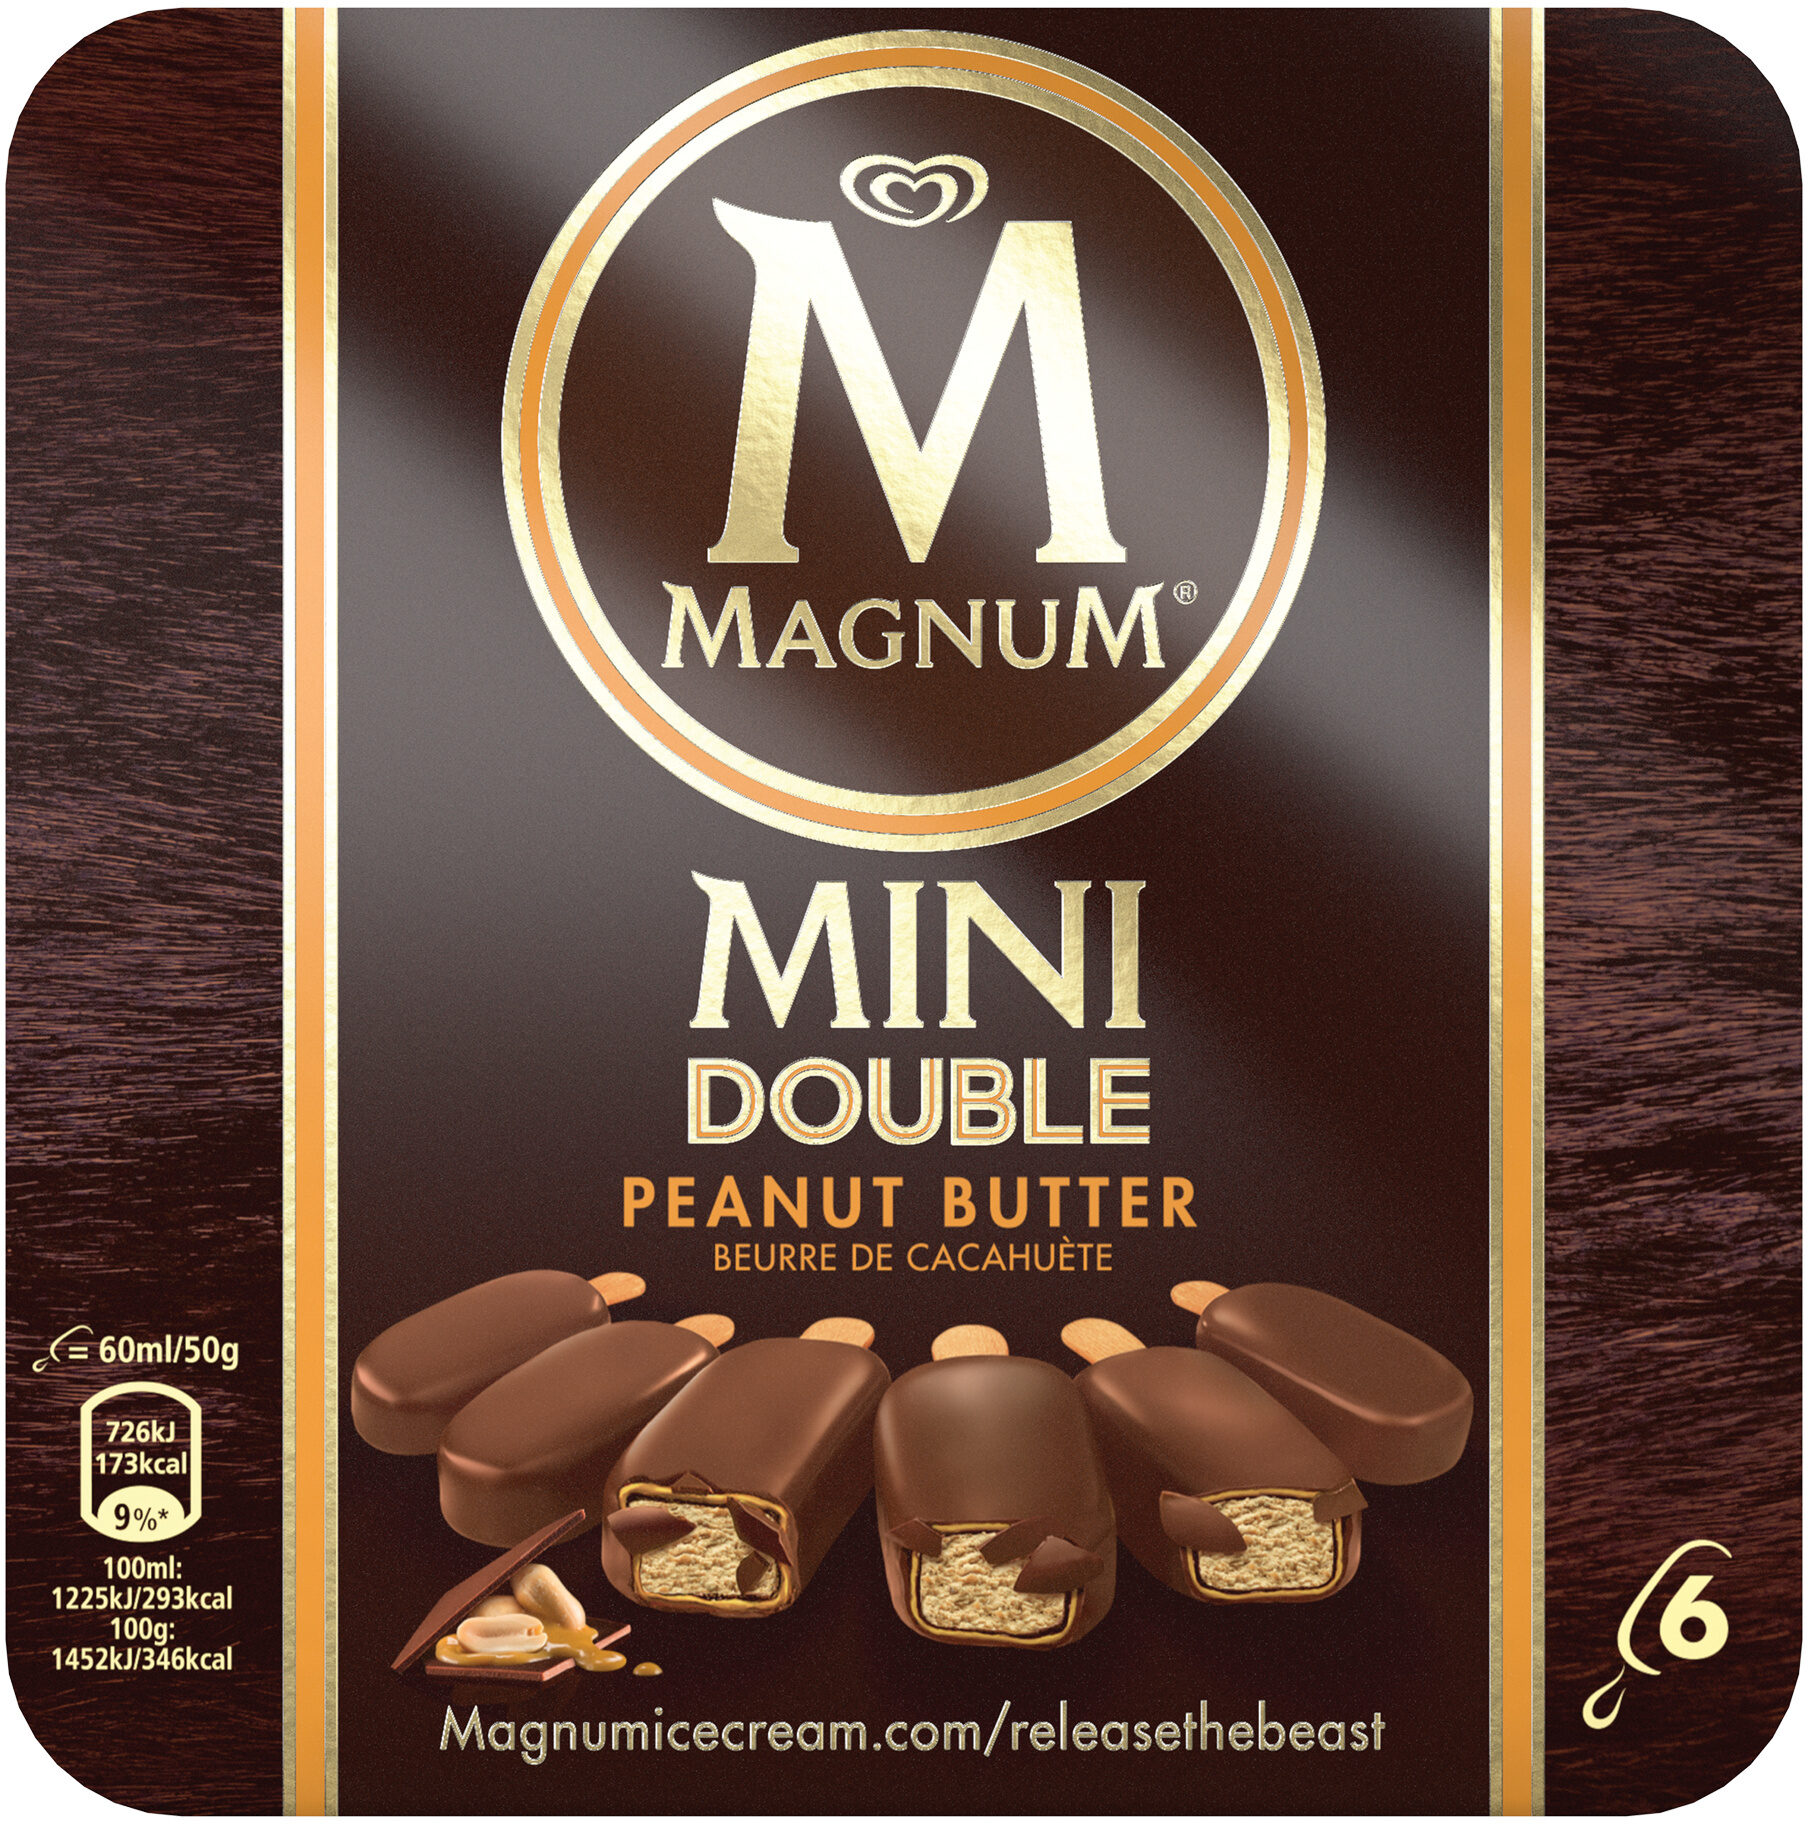 Magnum Glace Batonnet Mini Double Peanut Butter 6x60ml - Product - fr